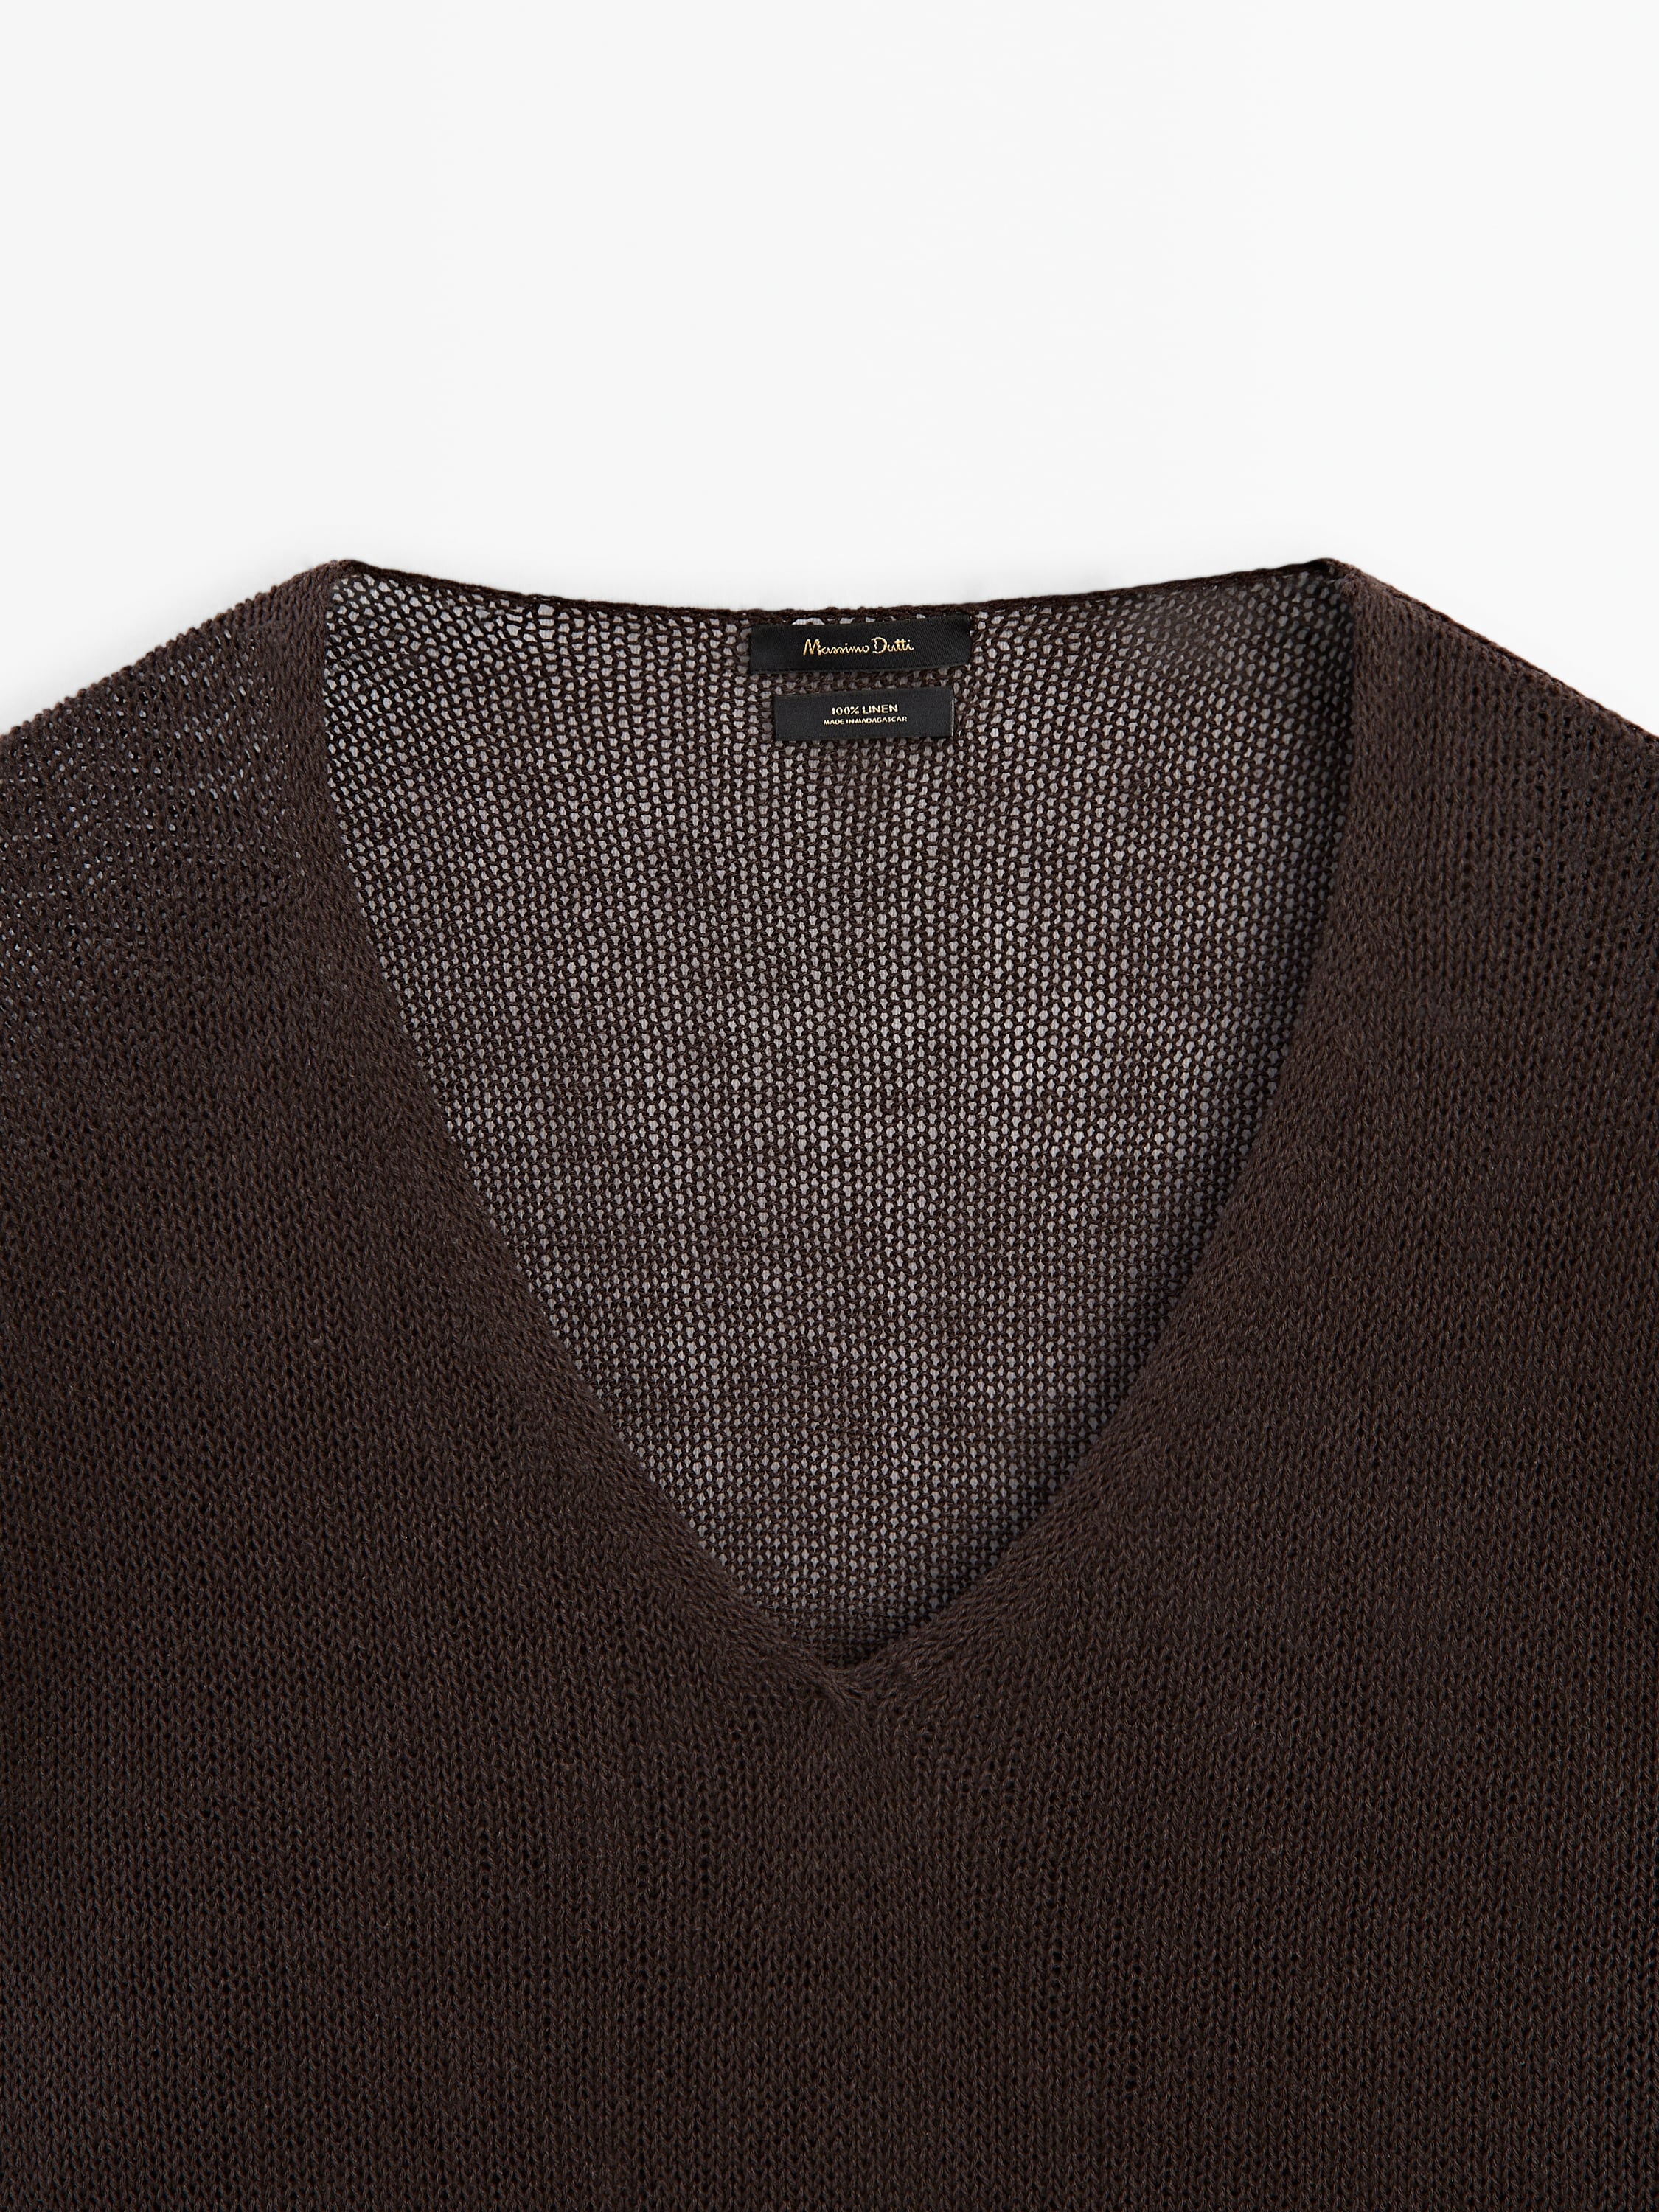 100% linen V-neck sweater